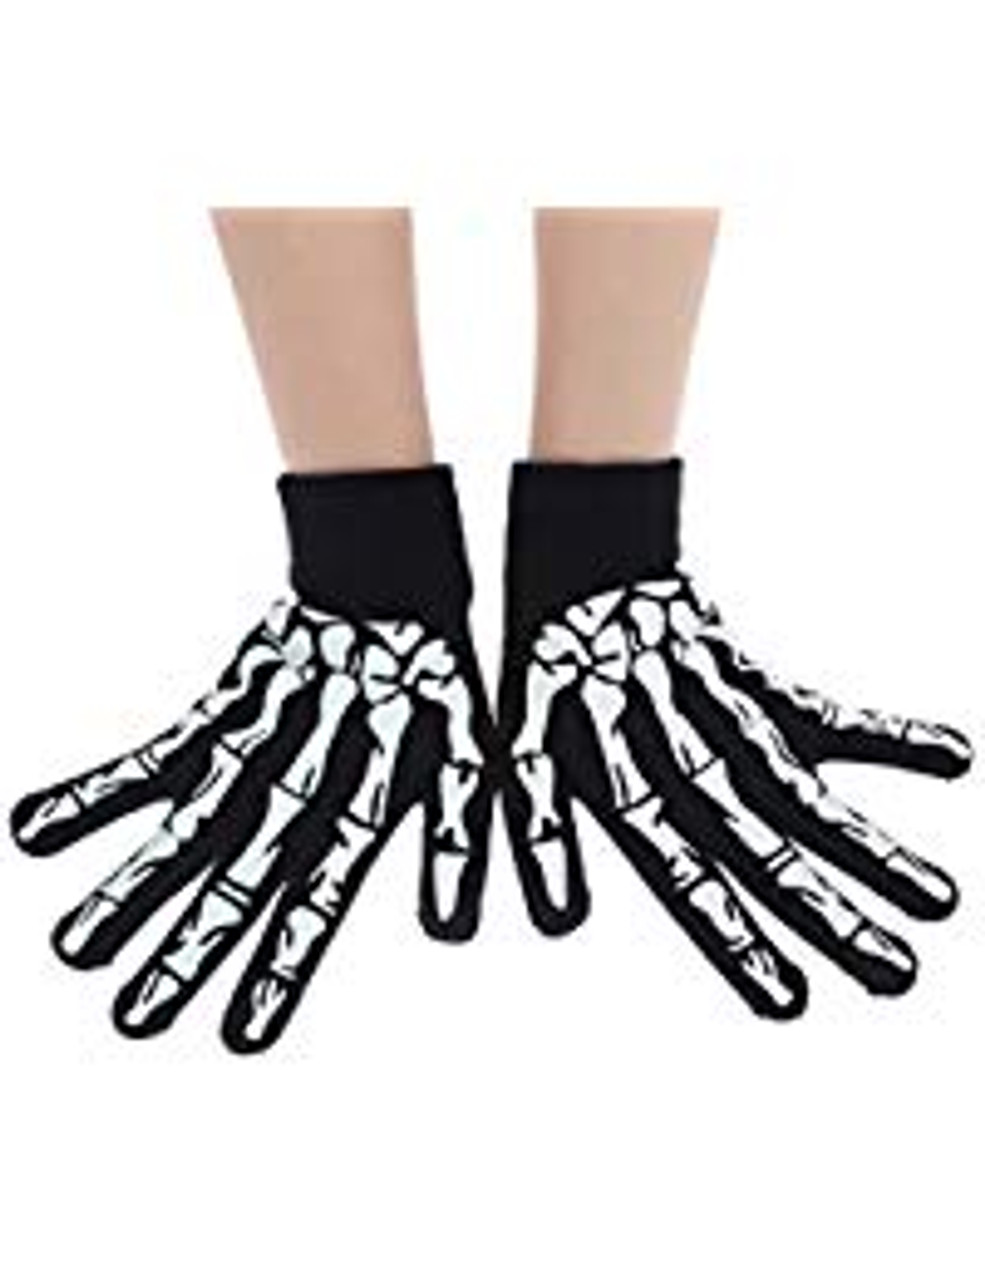 Skeleton Gloves, Skeleton Hand Gloves